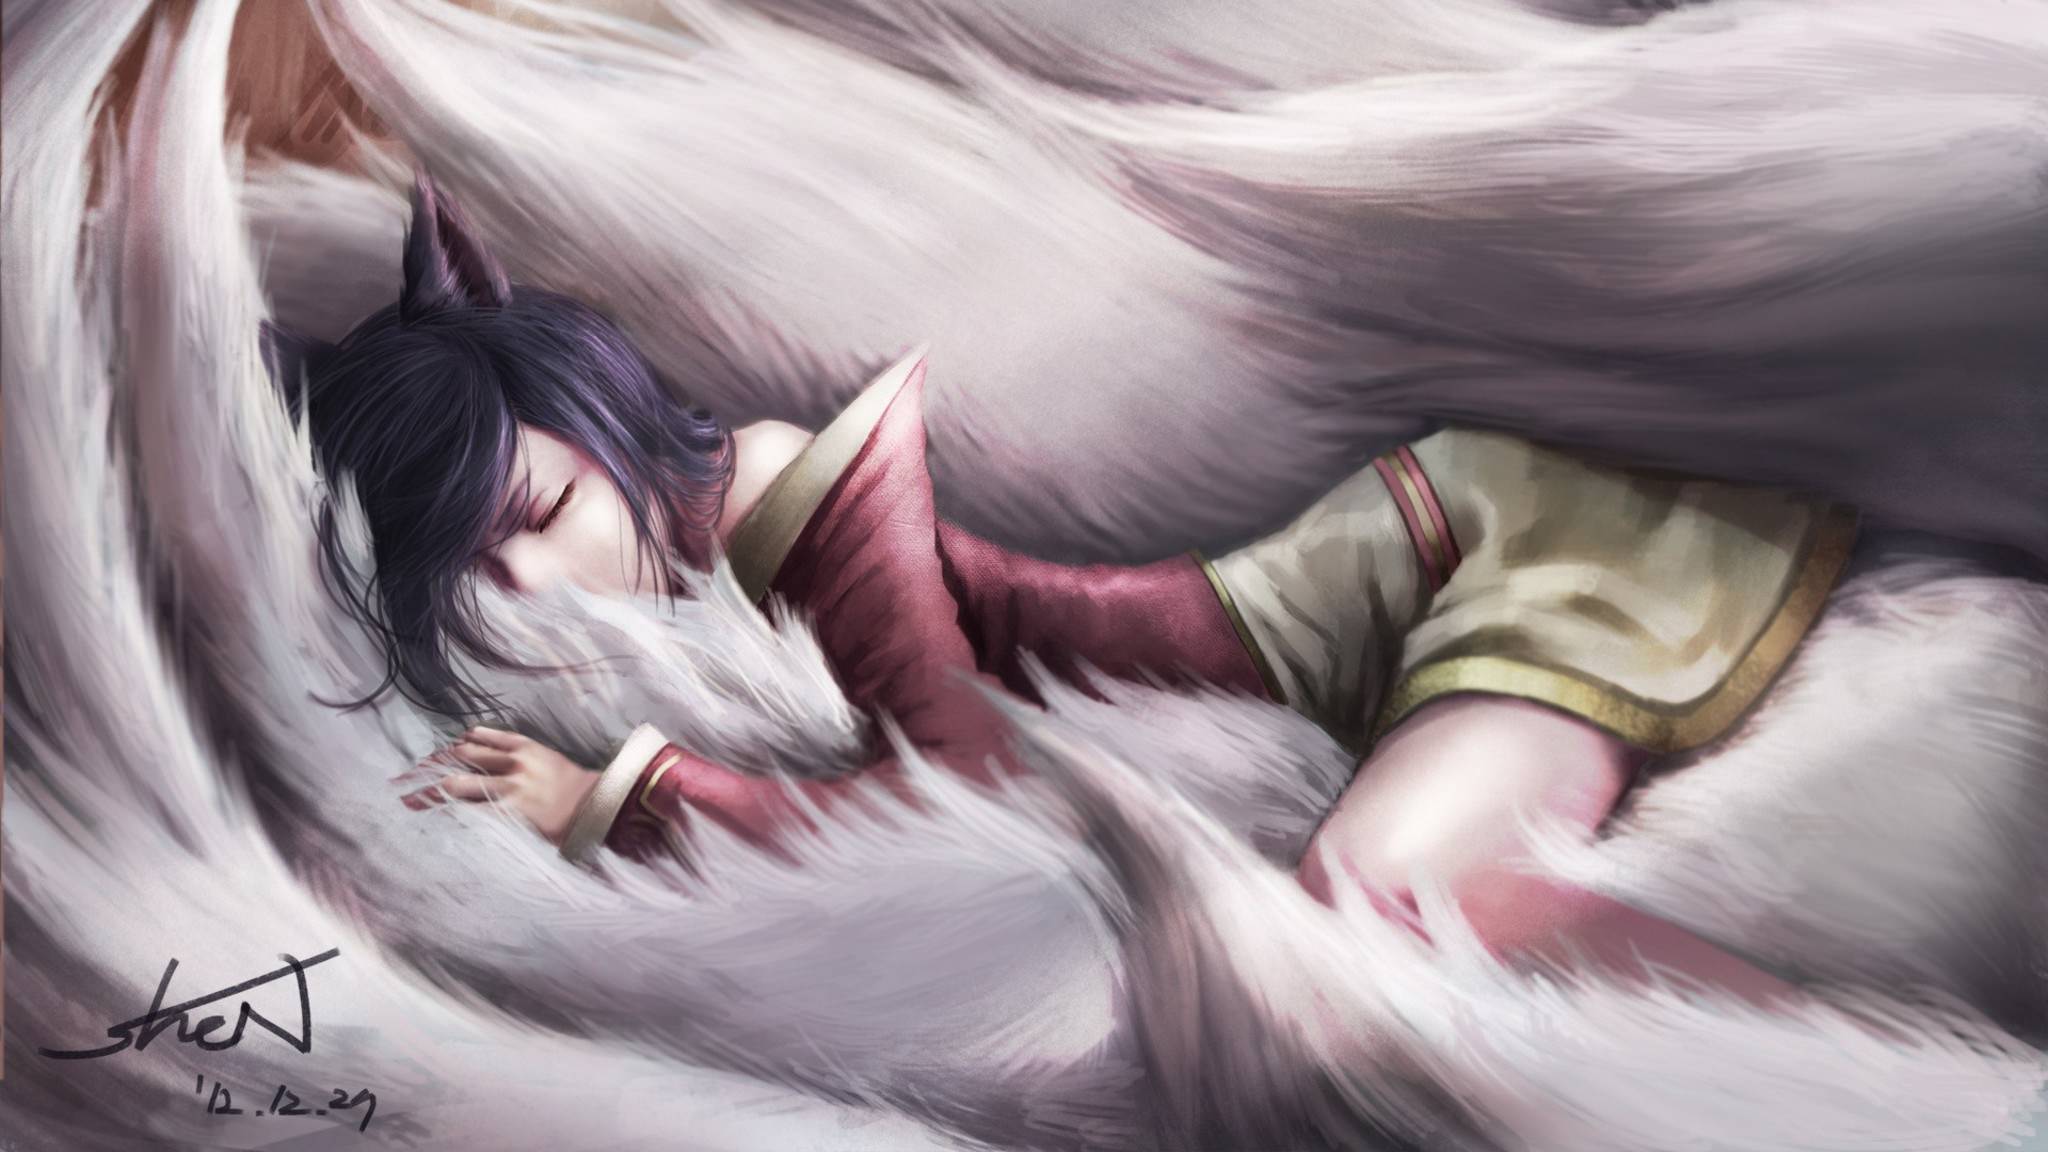 Pretty sleeping foxgirl Ahri: FullHD+ desktop wallpapers: League of Legends (Artist: Ake (Cherrylich))